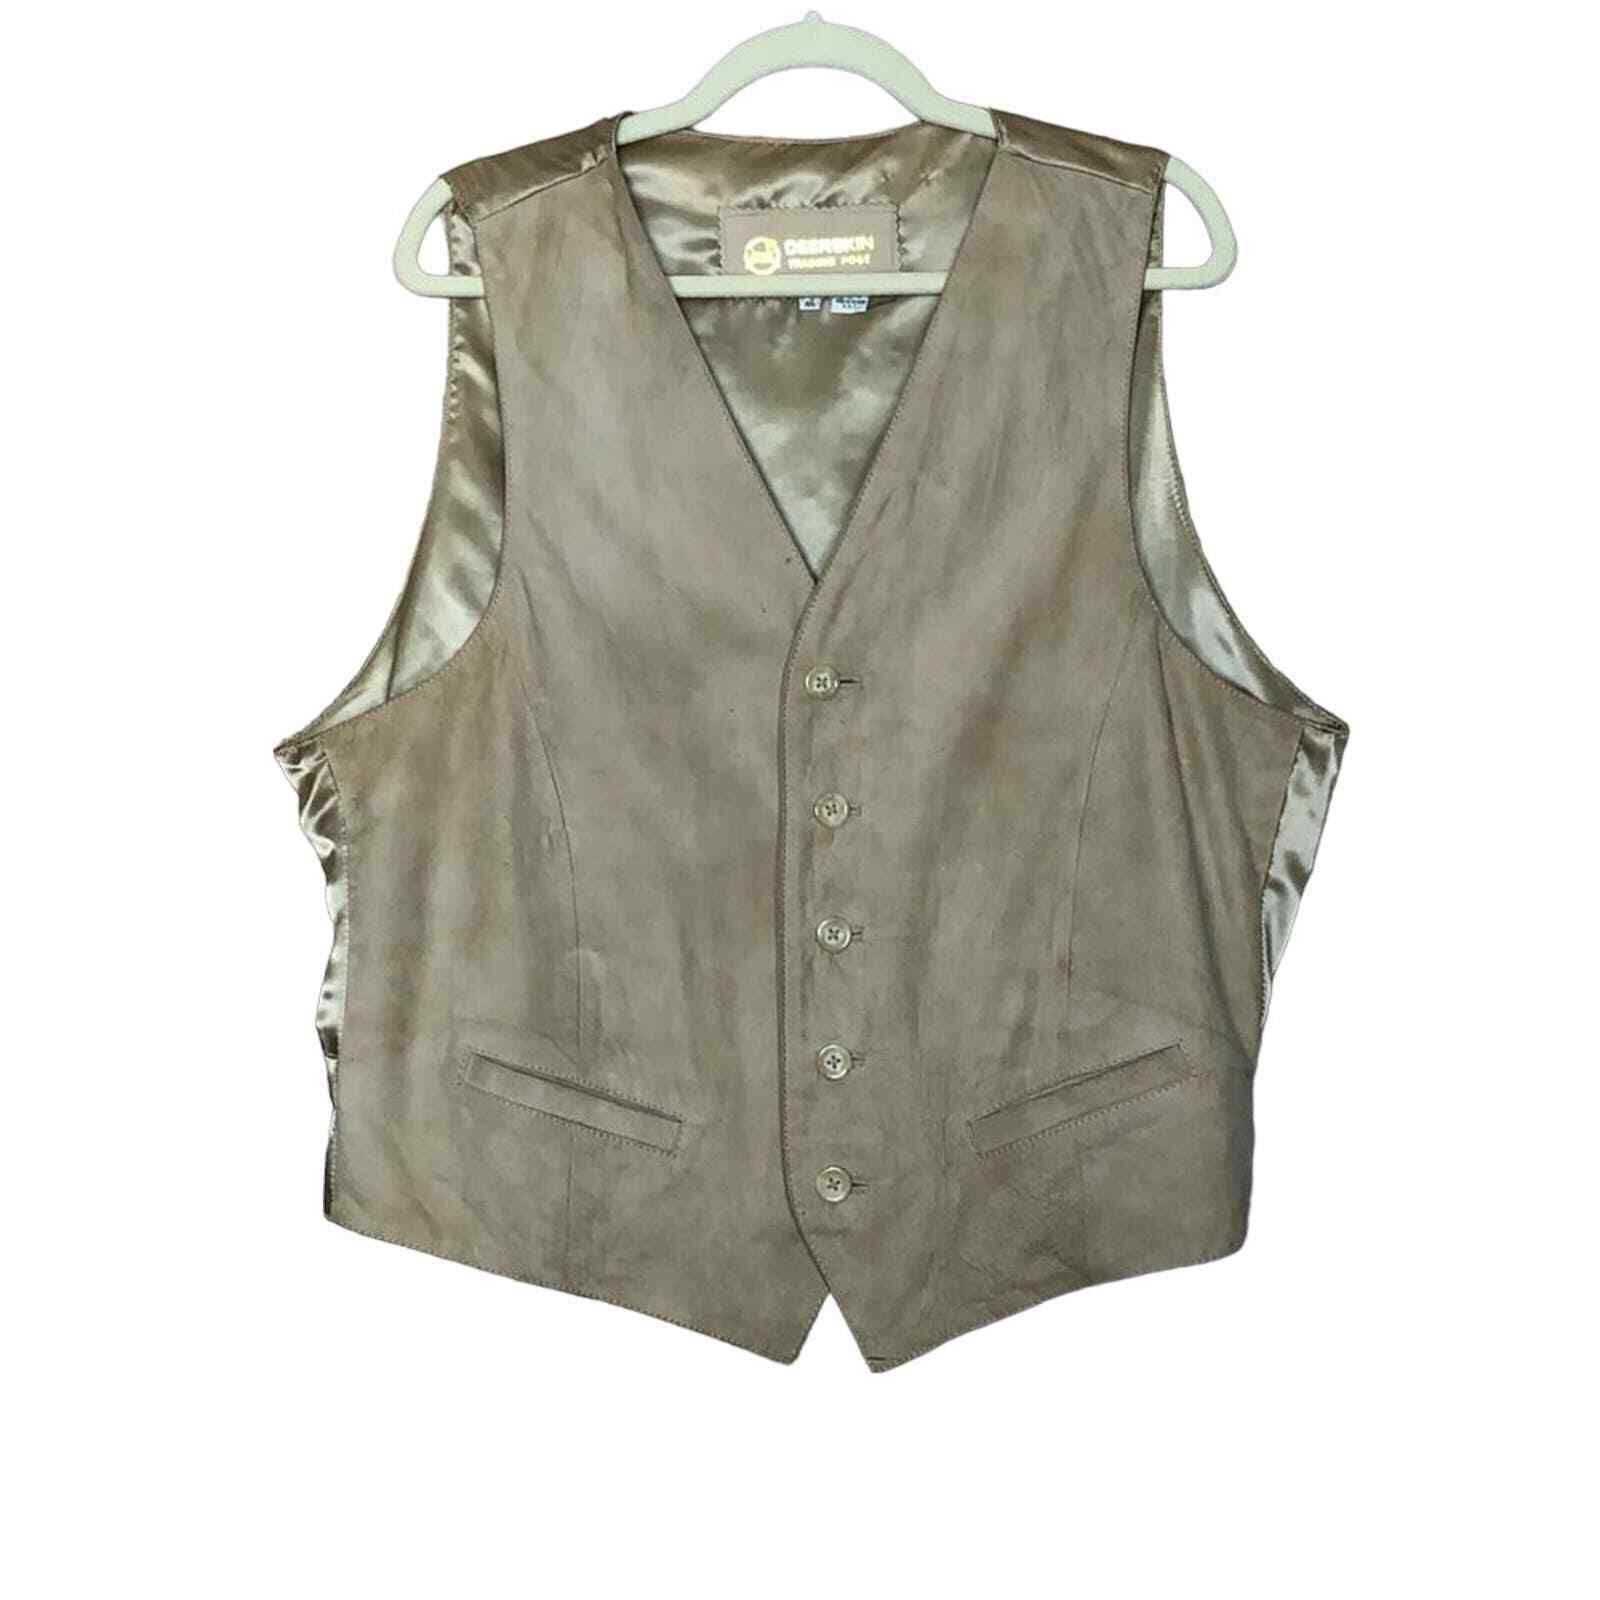 Men's Deerskin Trading Leather Vest Tan Size 46 - image 1